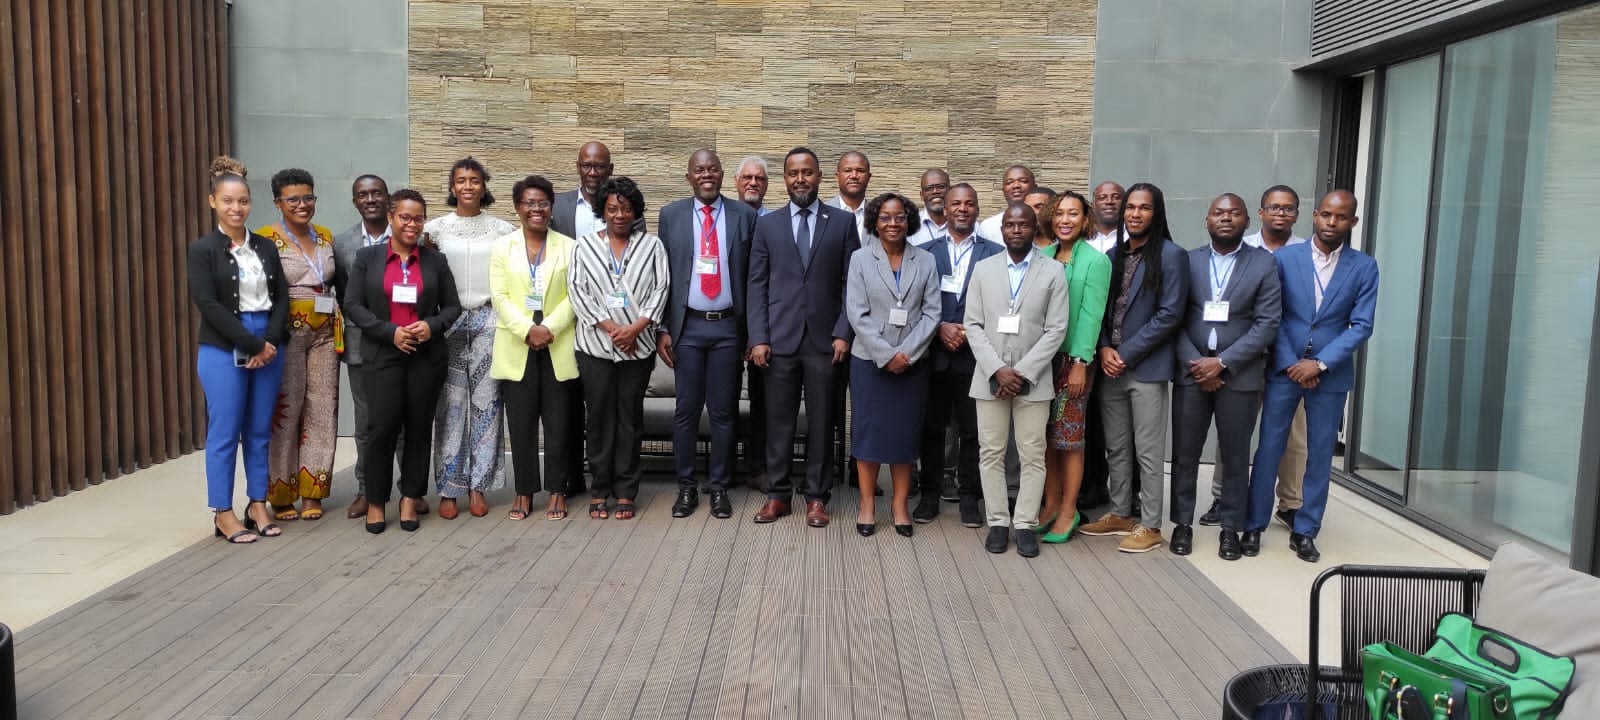 Esta semana, decorre em Lome (TOGO) a Reunião préparatoria de conselho de Ministros da Economia e Finanças da UEMOA concretamente em DAKAR (SENEGAL) de 12 até 16 de Setembro de 2022!